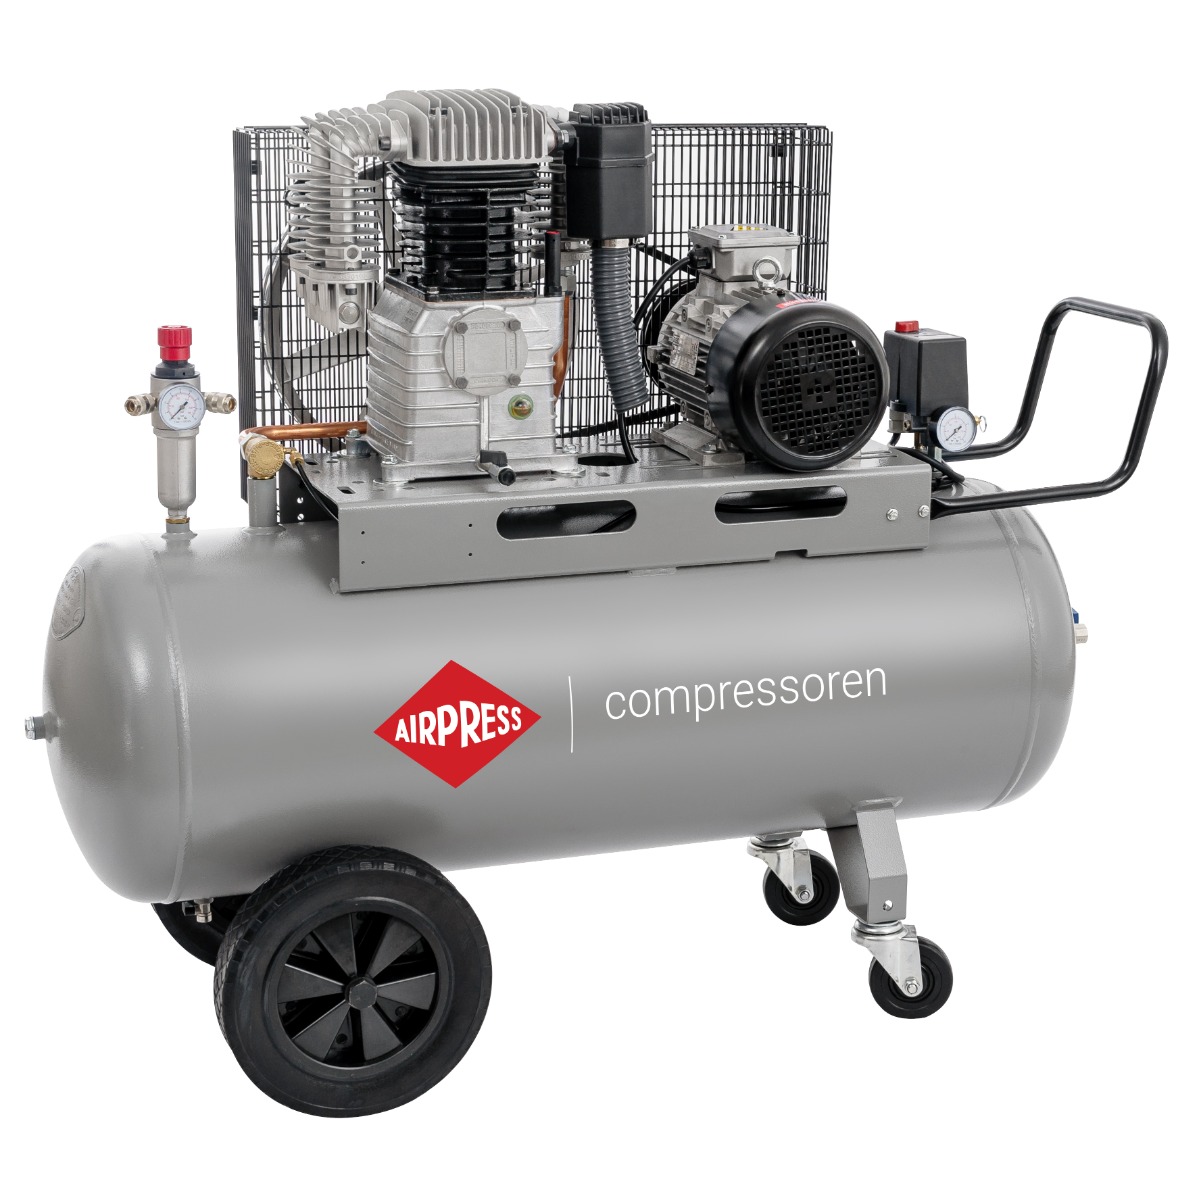 HK 700-150 Pro compressor